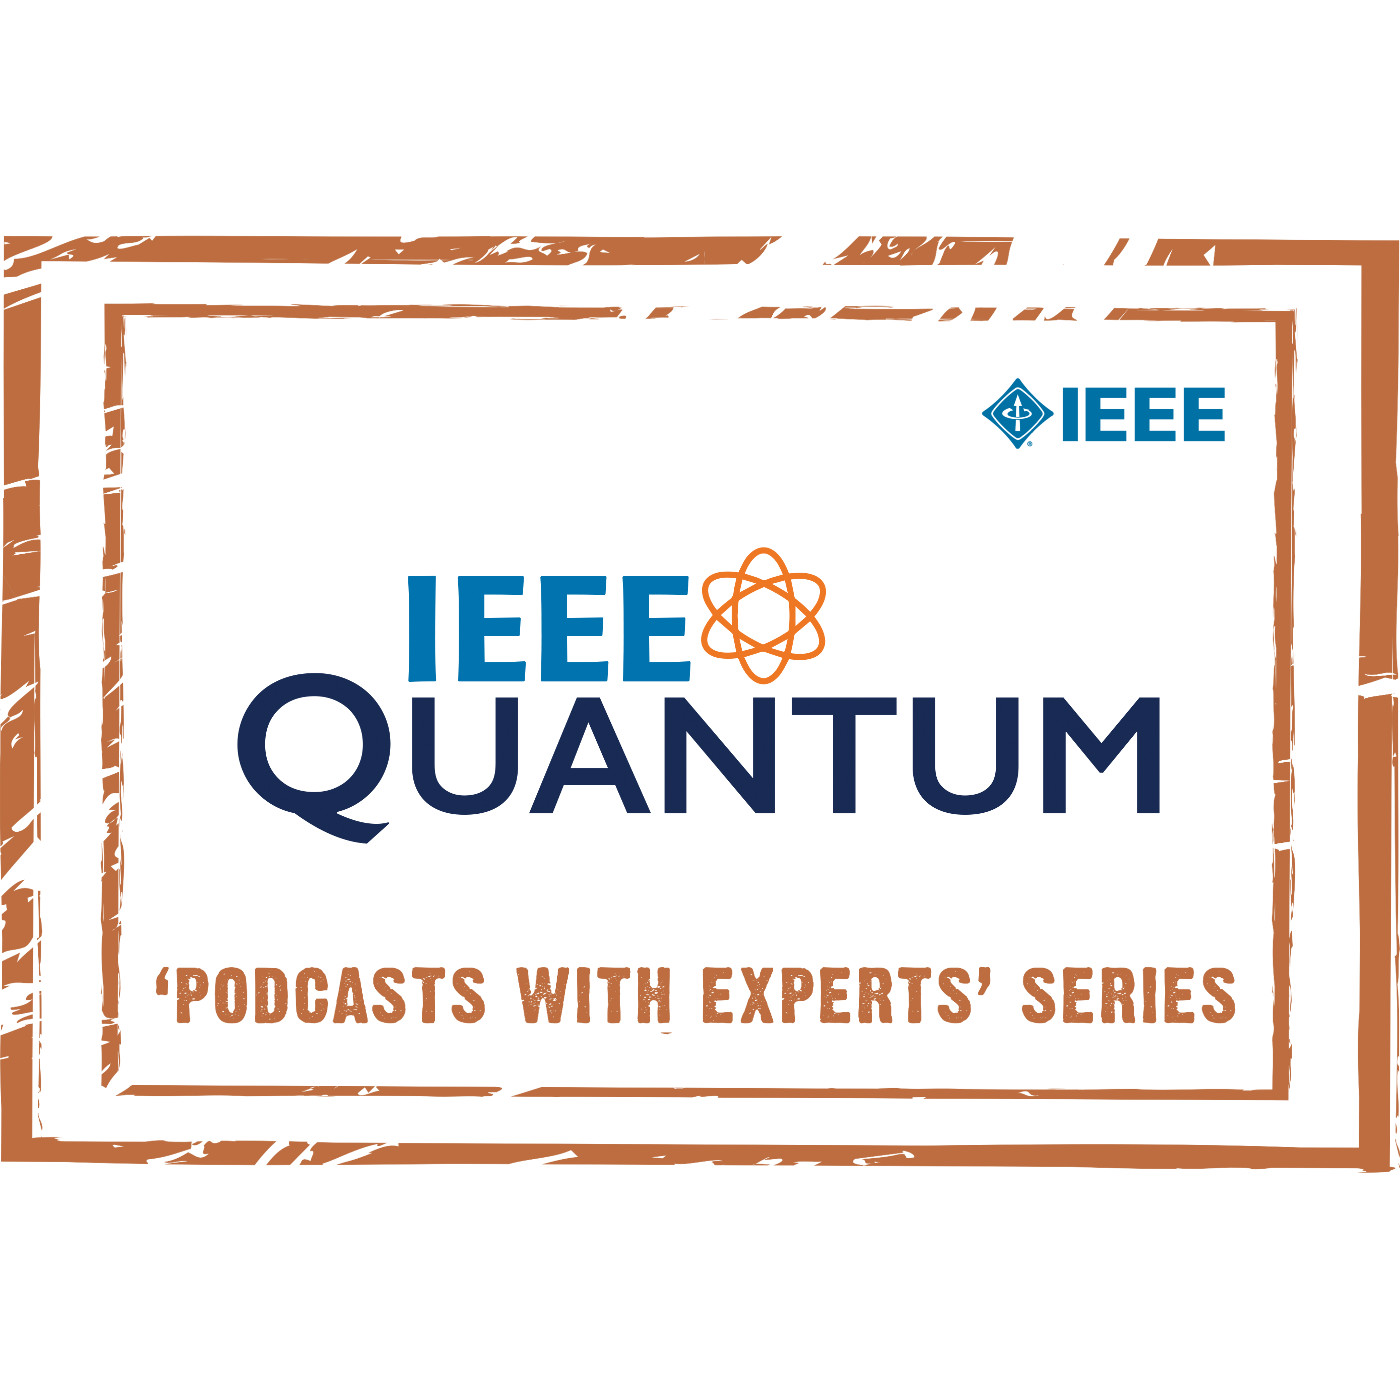 IEEE Quantum